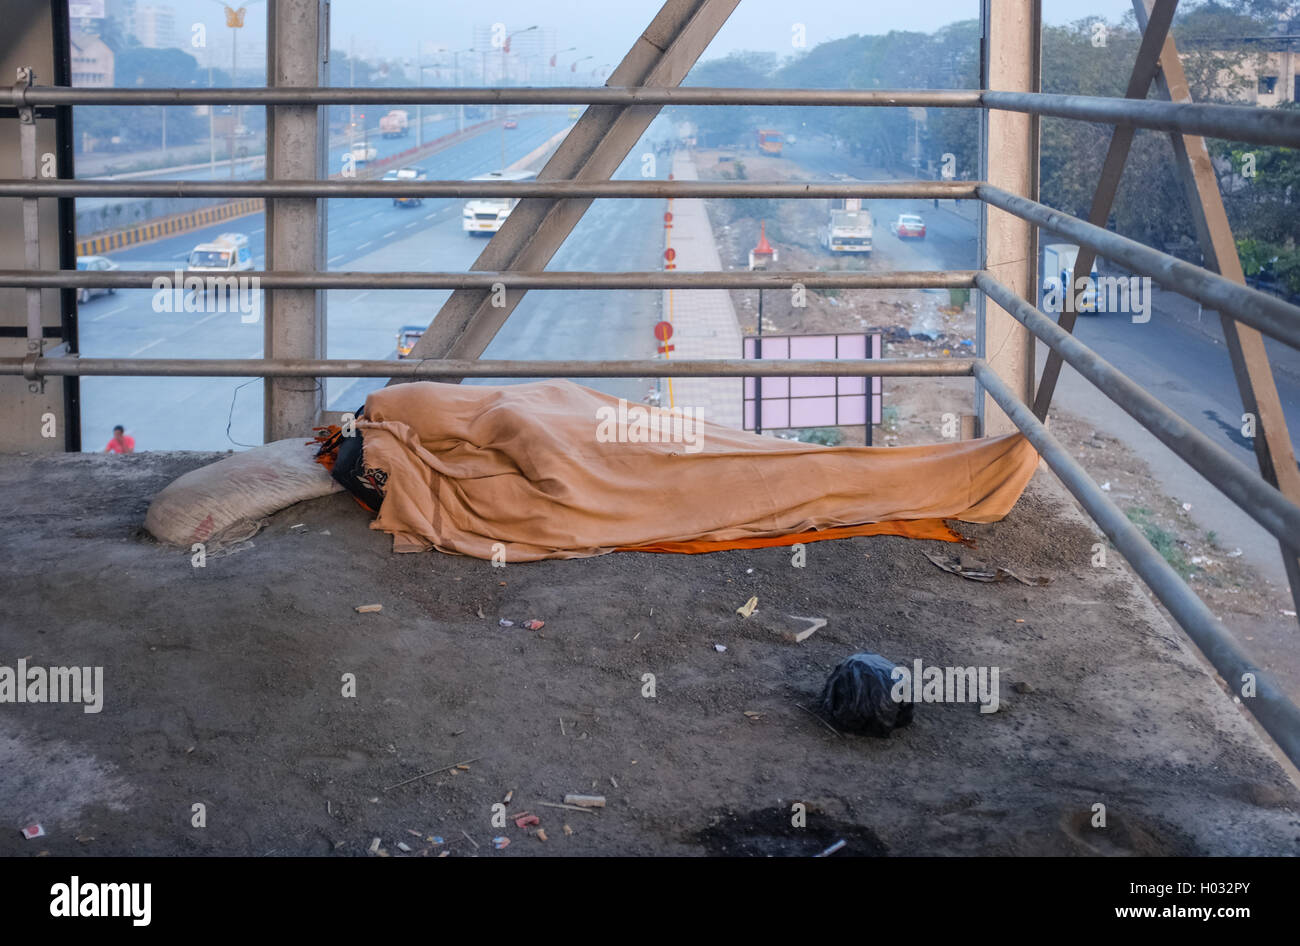 MUMBAI, INDE - 05 février 2015 : personne dort sur viaduc sur la masse sale avec tout son corps couvert par une couverture. Scène commune Banque D'Images